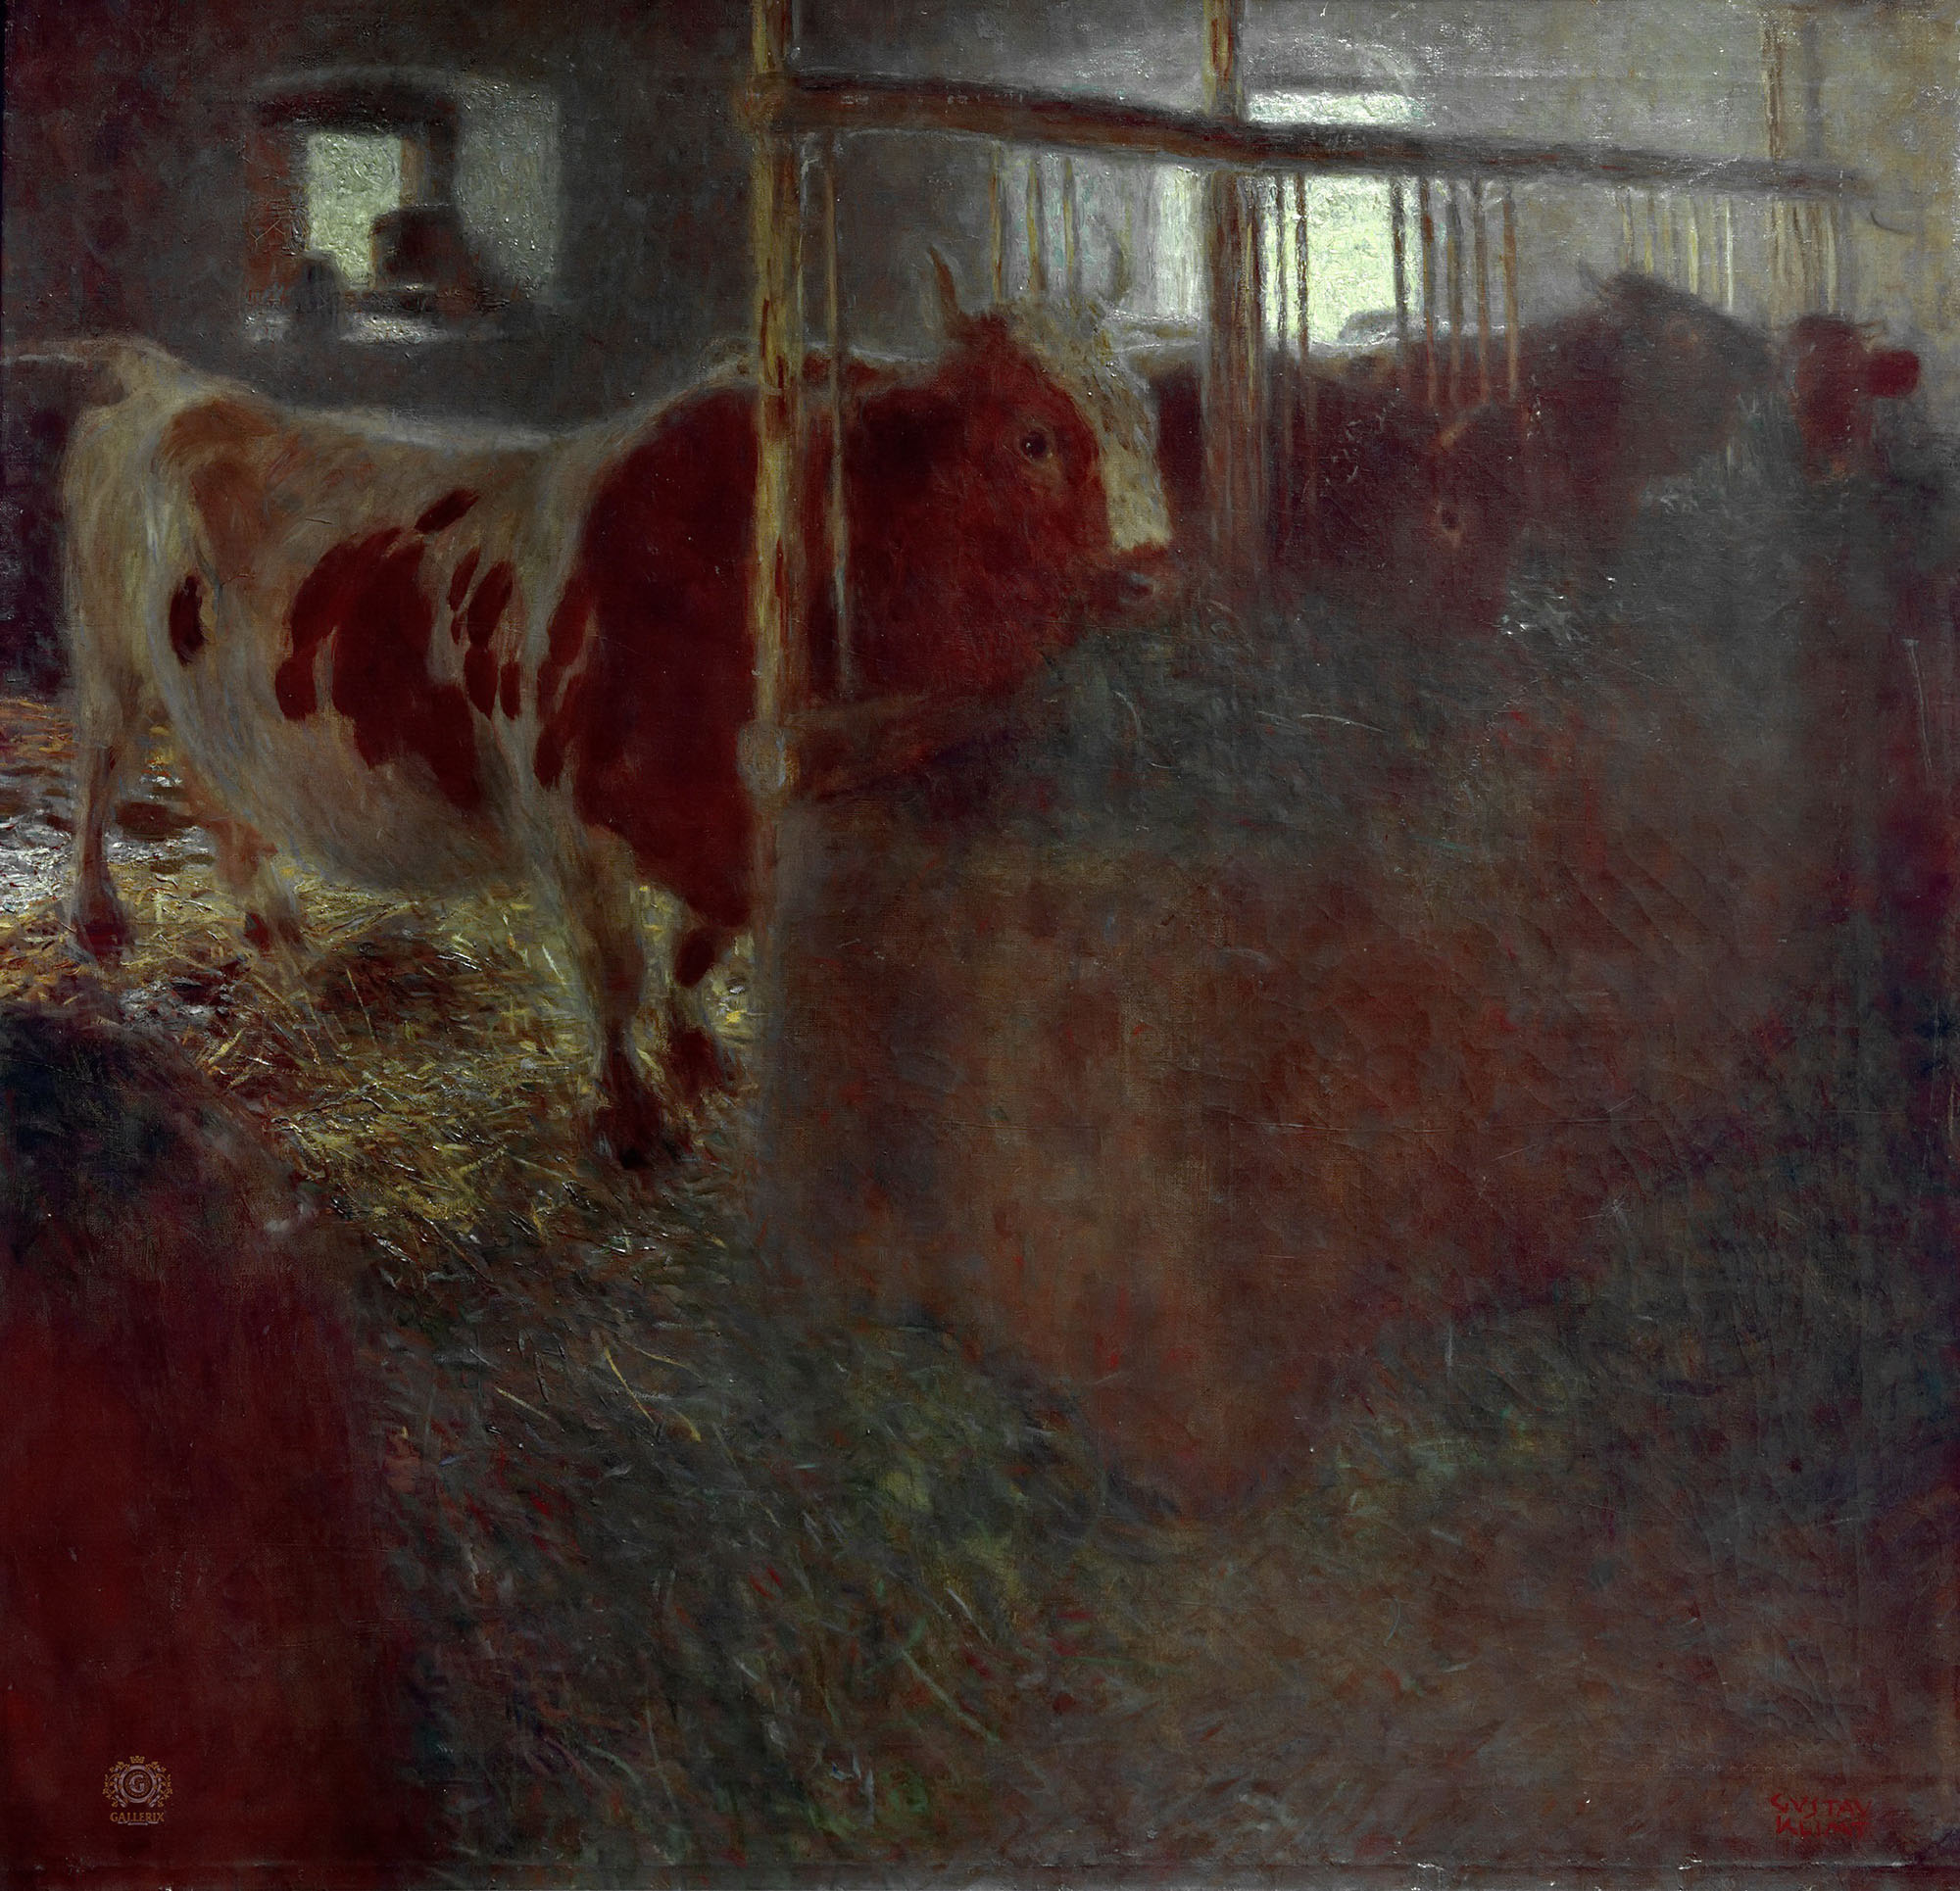 Густав Климт. "Корова в стойле". 1899. Музей современного искусства, Линц.